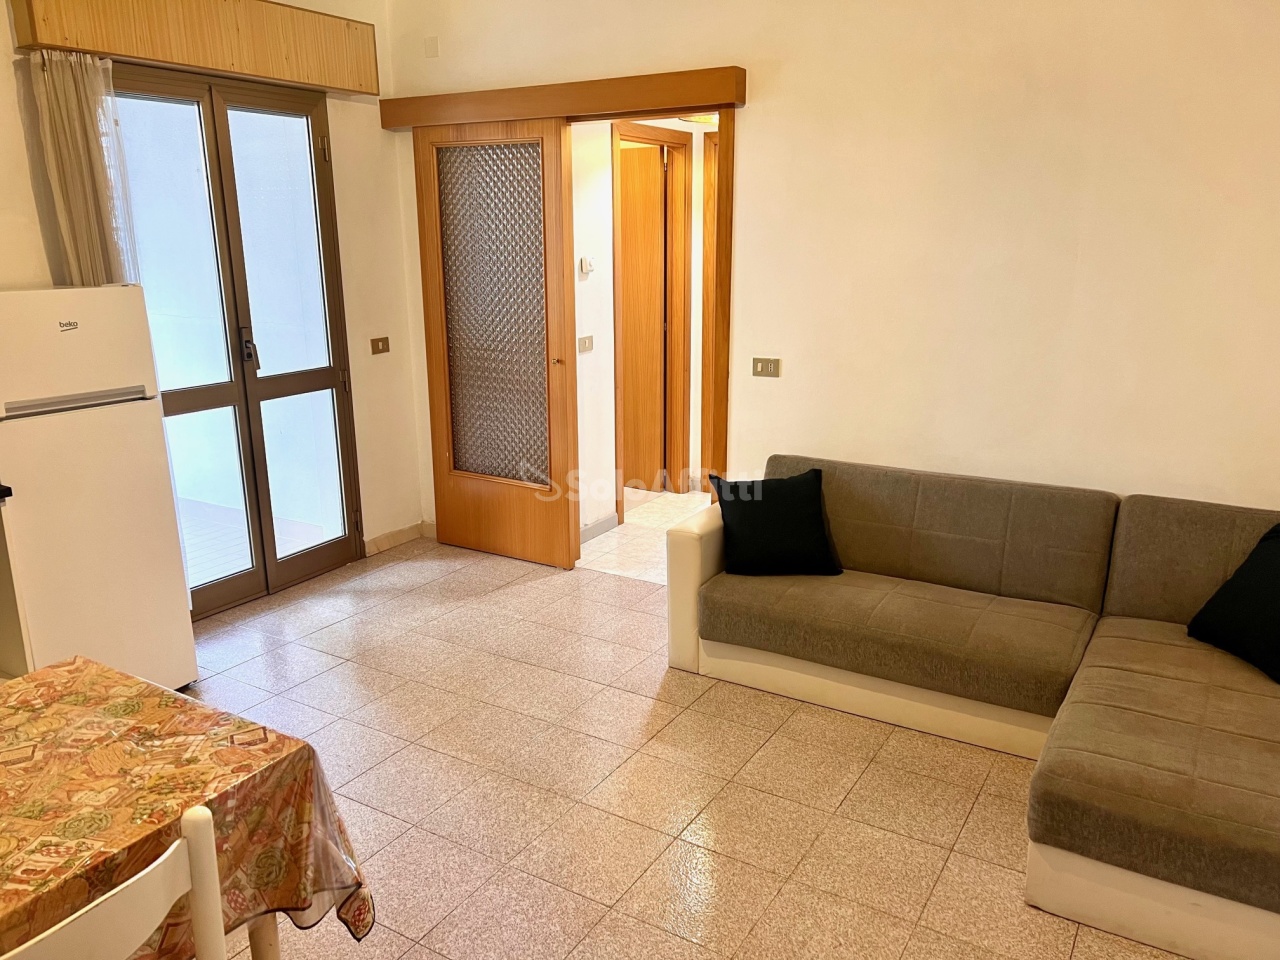 Appartamento in affitto a Alba Adriatica, 3 locali, prezzo € 500 | PortaleAgenzieImmobiliari.it